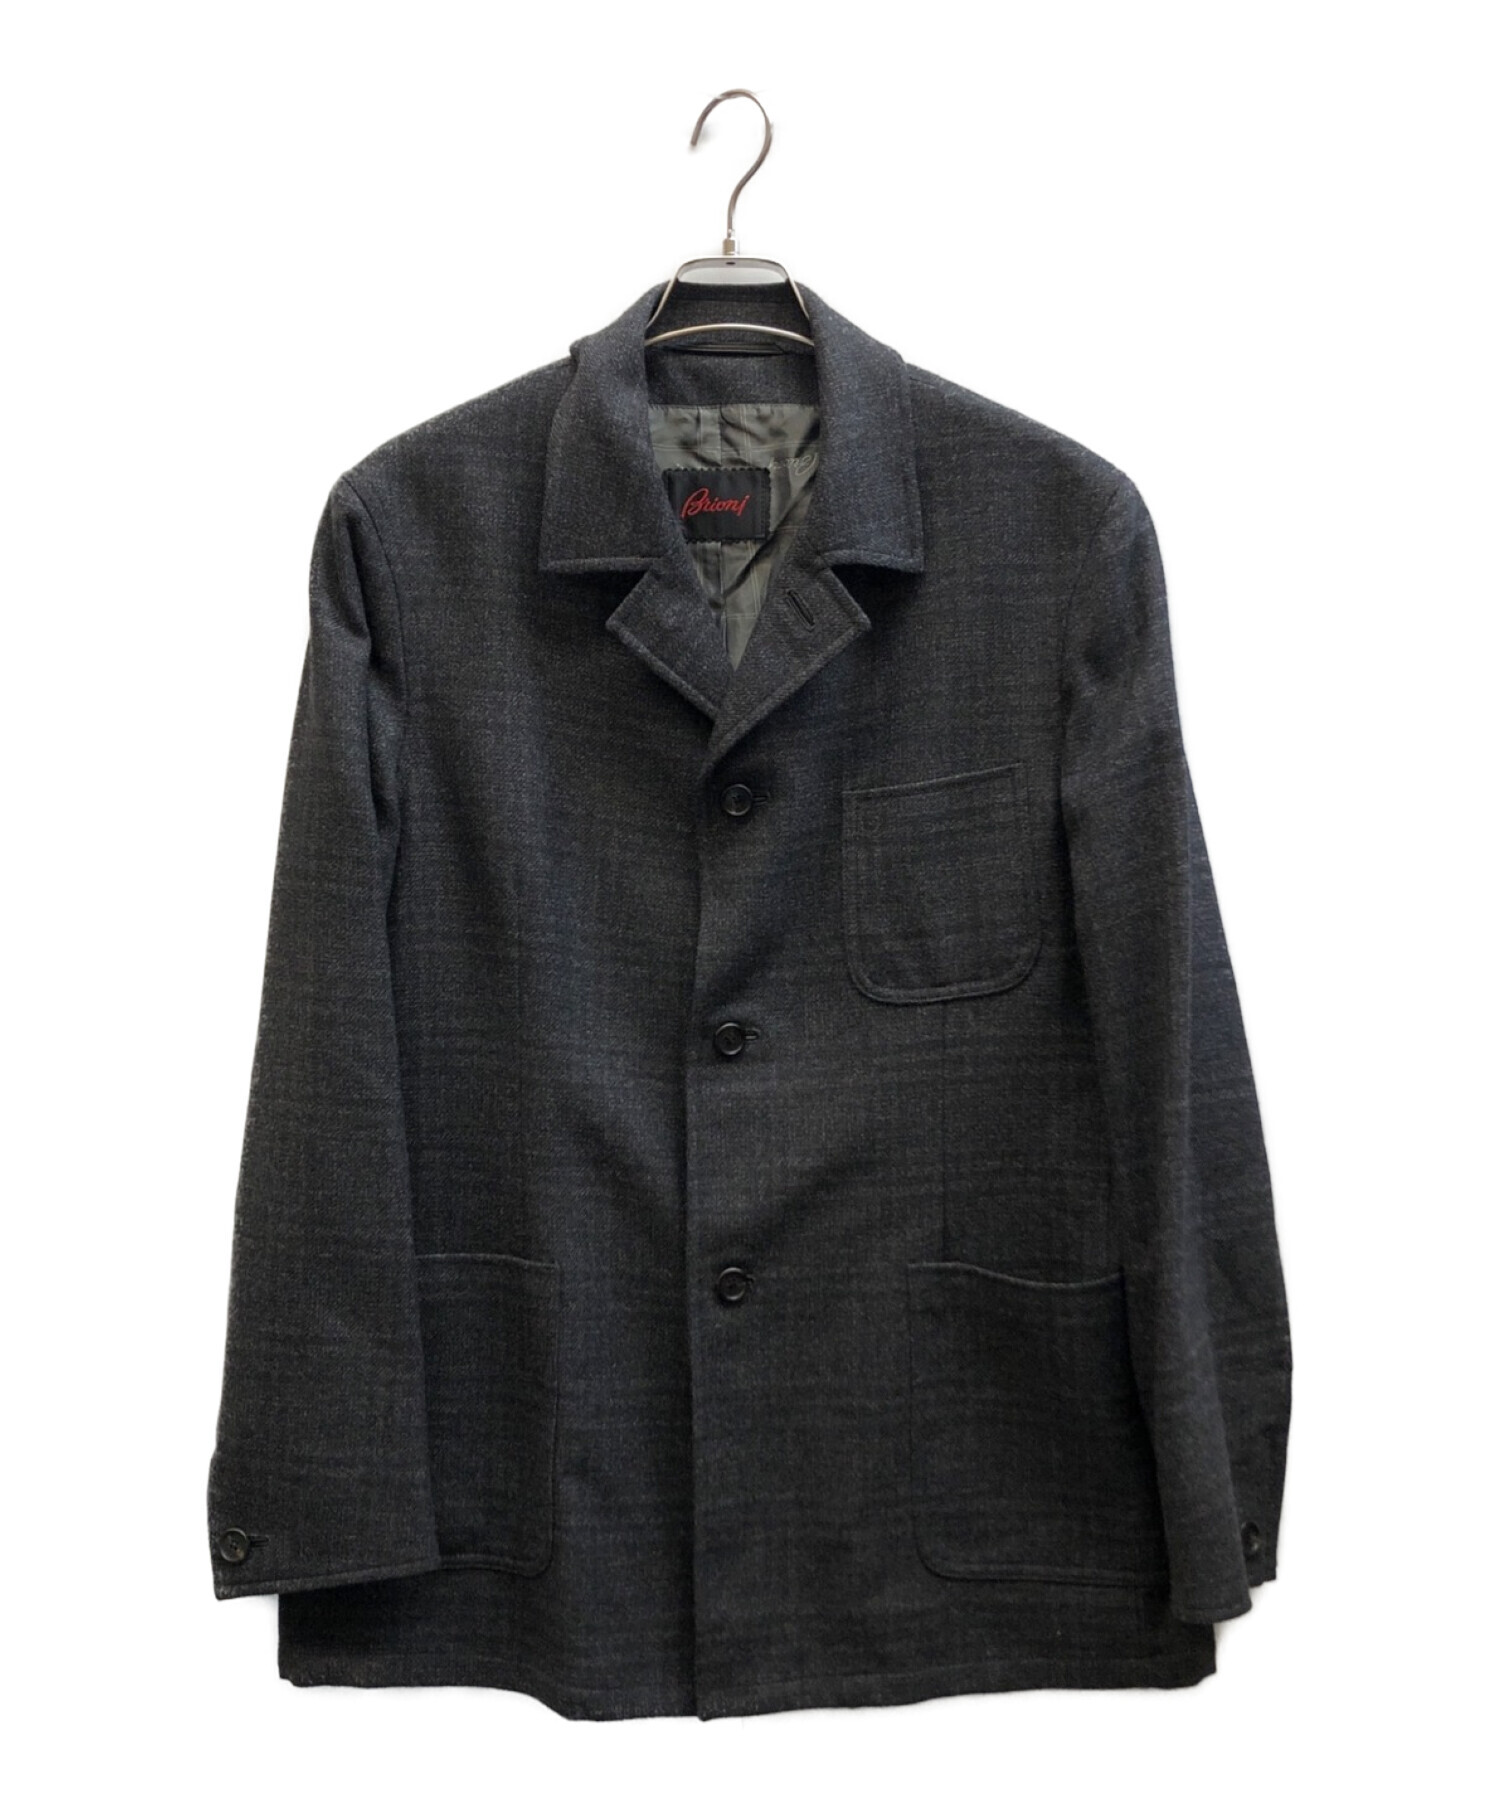 BRIONI (ブリオーニ) ウールカシミヤジャケット グレー サイズ:M